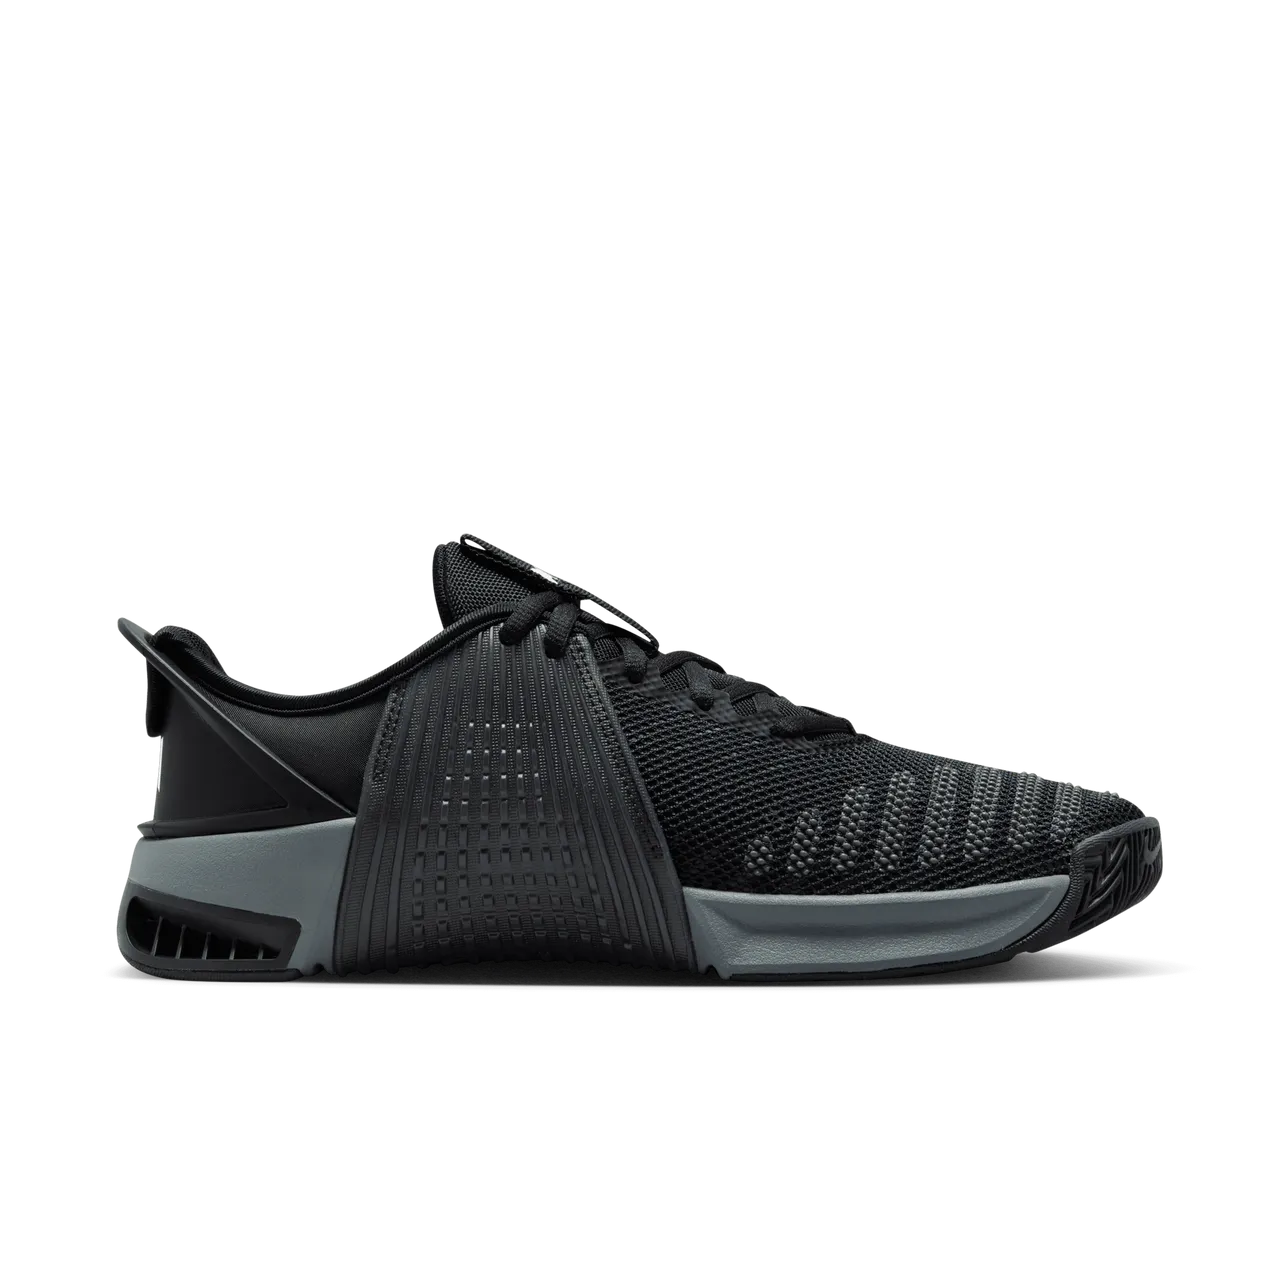 Nike Metcon 9 EasyOn Men's Workout Shoes - Black